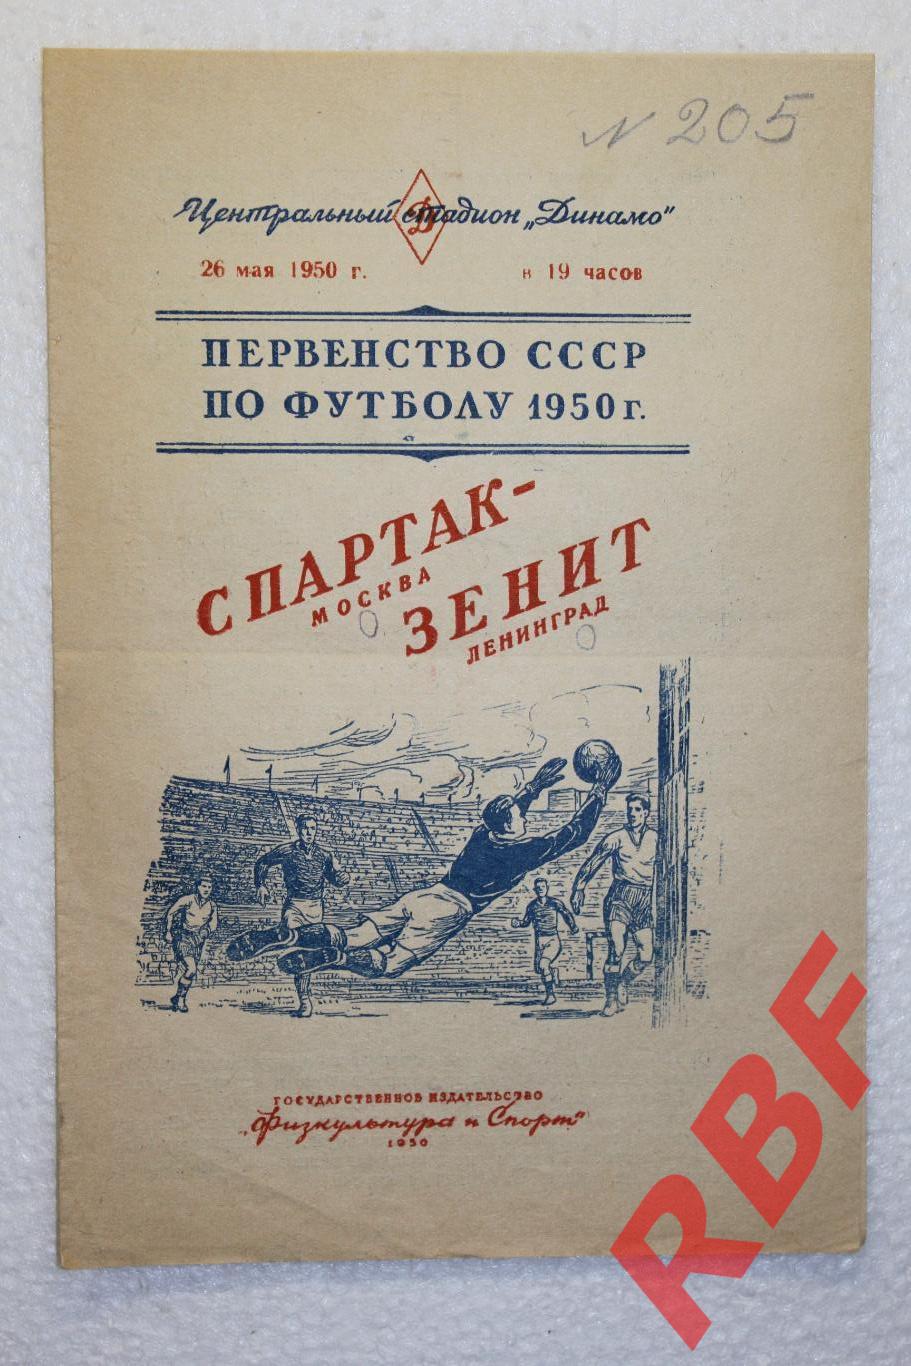 Спартак Москва - Зенит Ленинград,26 мая 1950